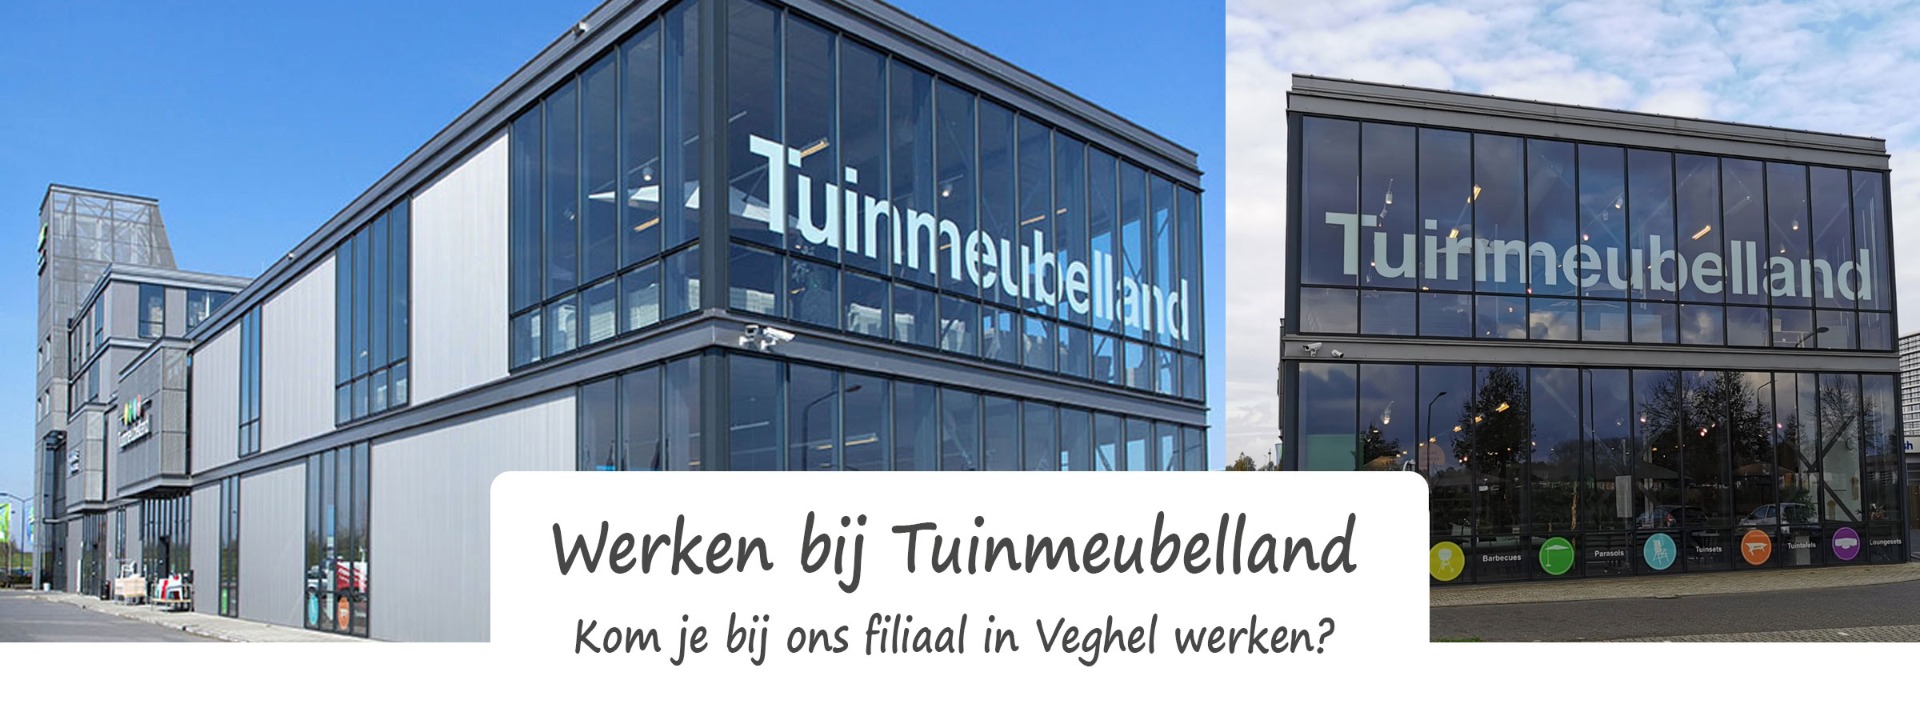 Werken bij Tuinmeubelland Veghel